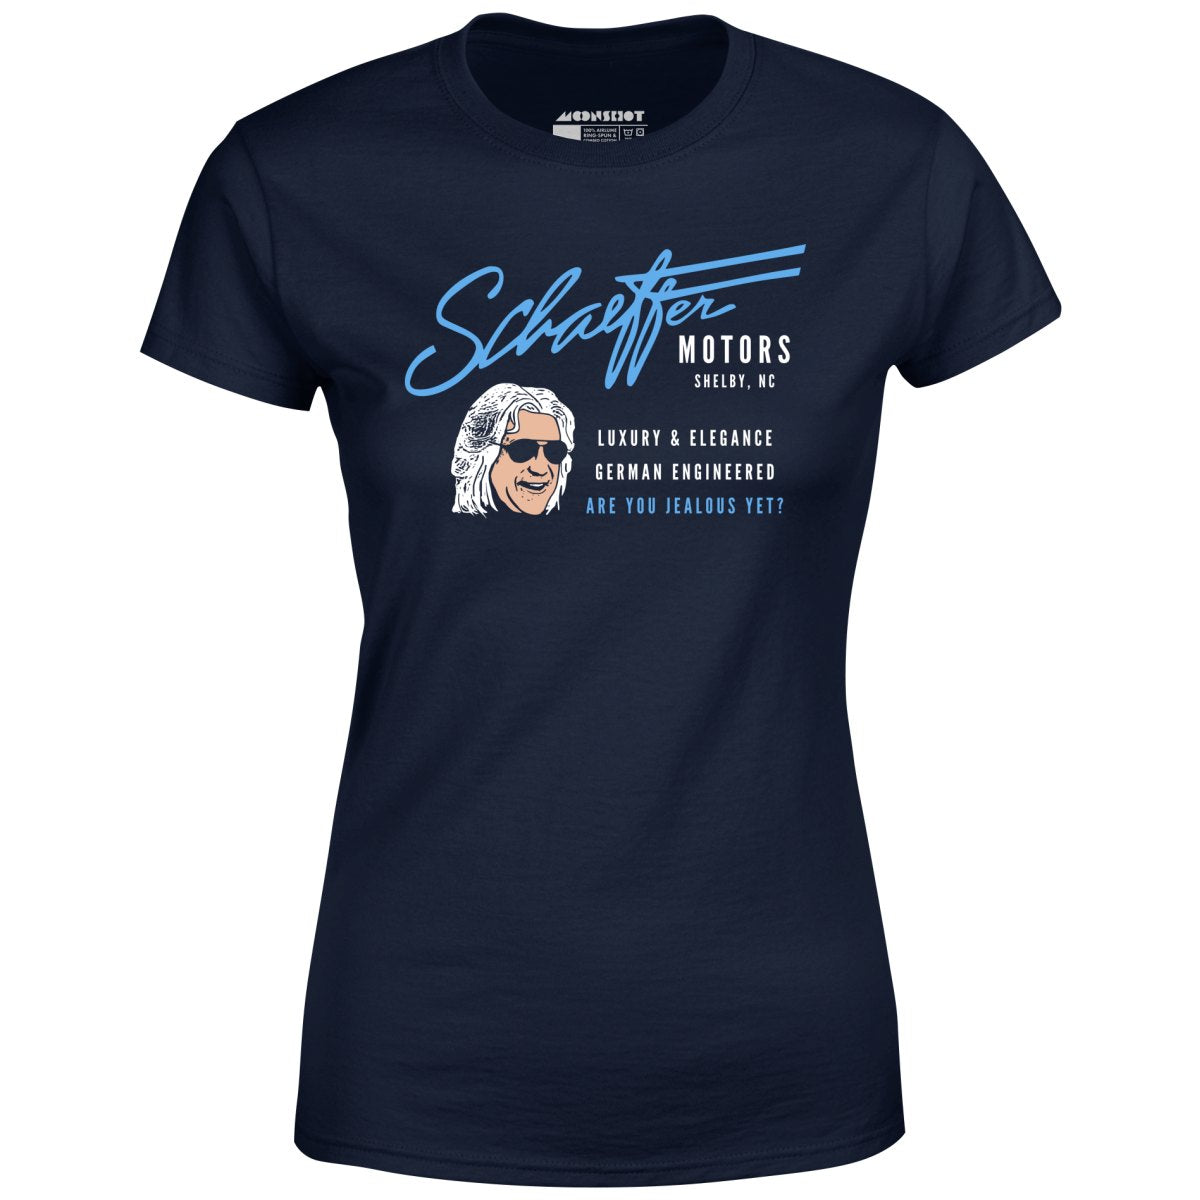 Schaeffer Motors - Women's T-Shirt